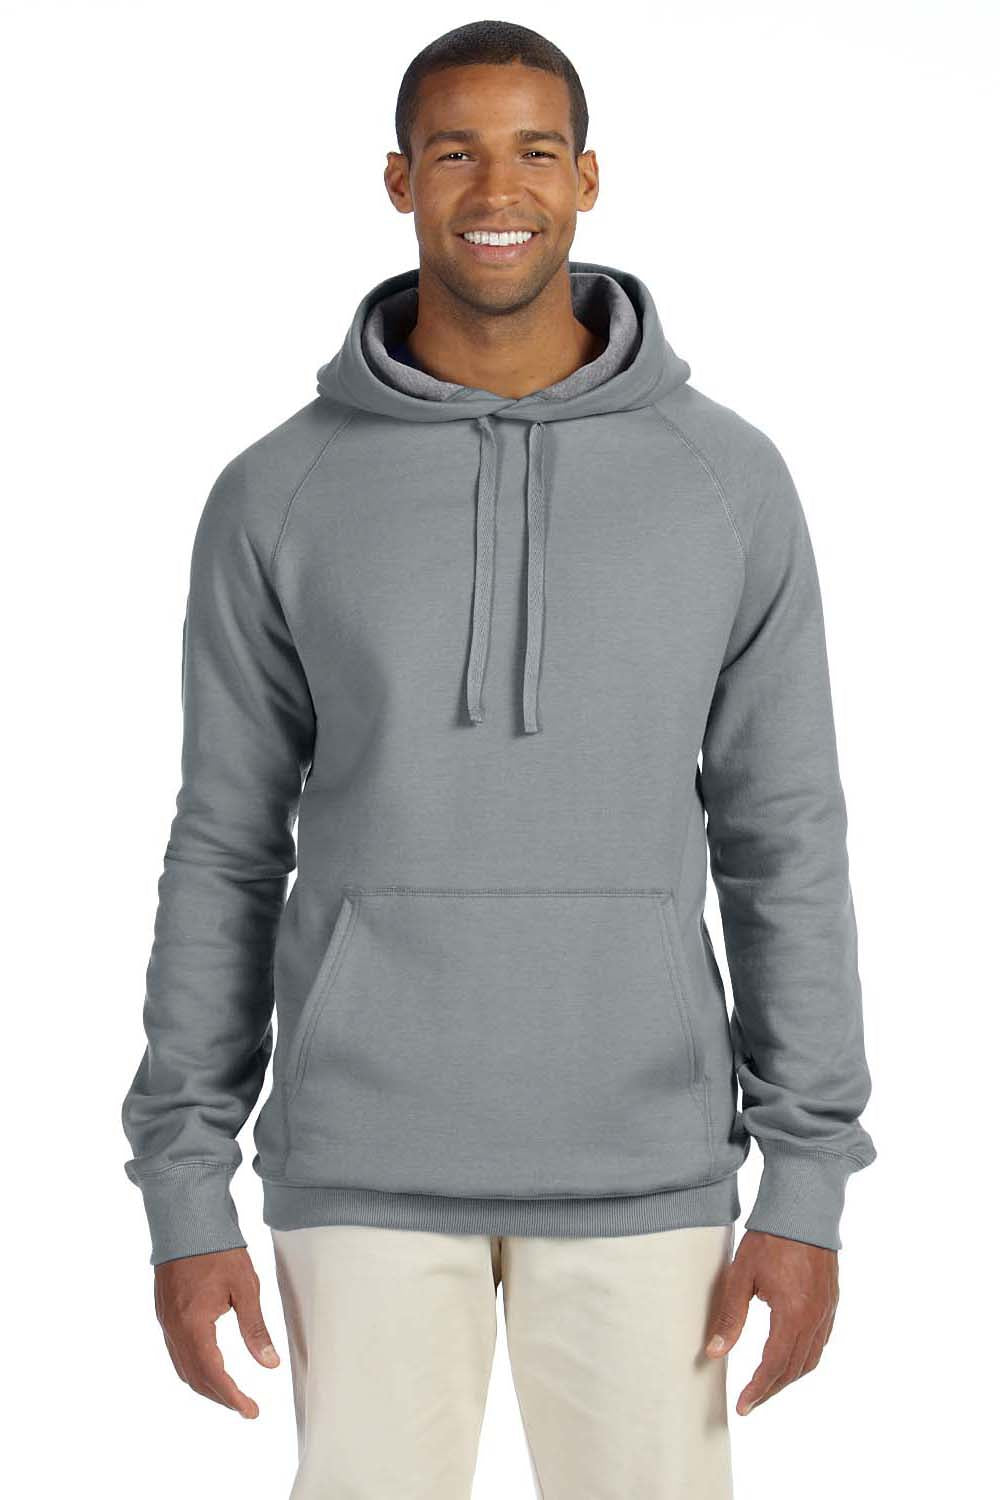 Hanes N270 Mens Nano Fleece Hooded Sweatshirt Hoodie Vintage Grey Front